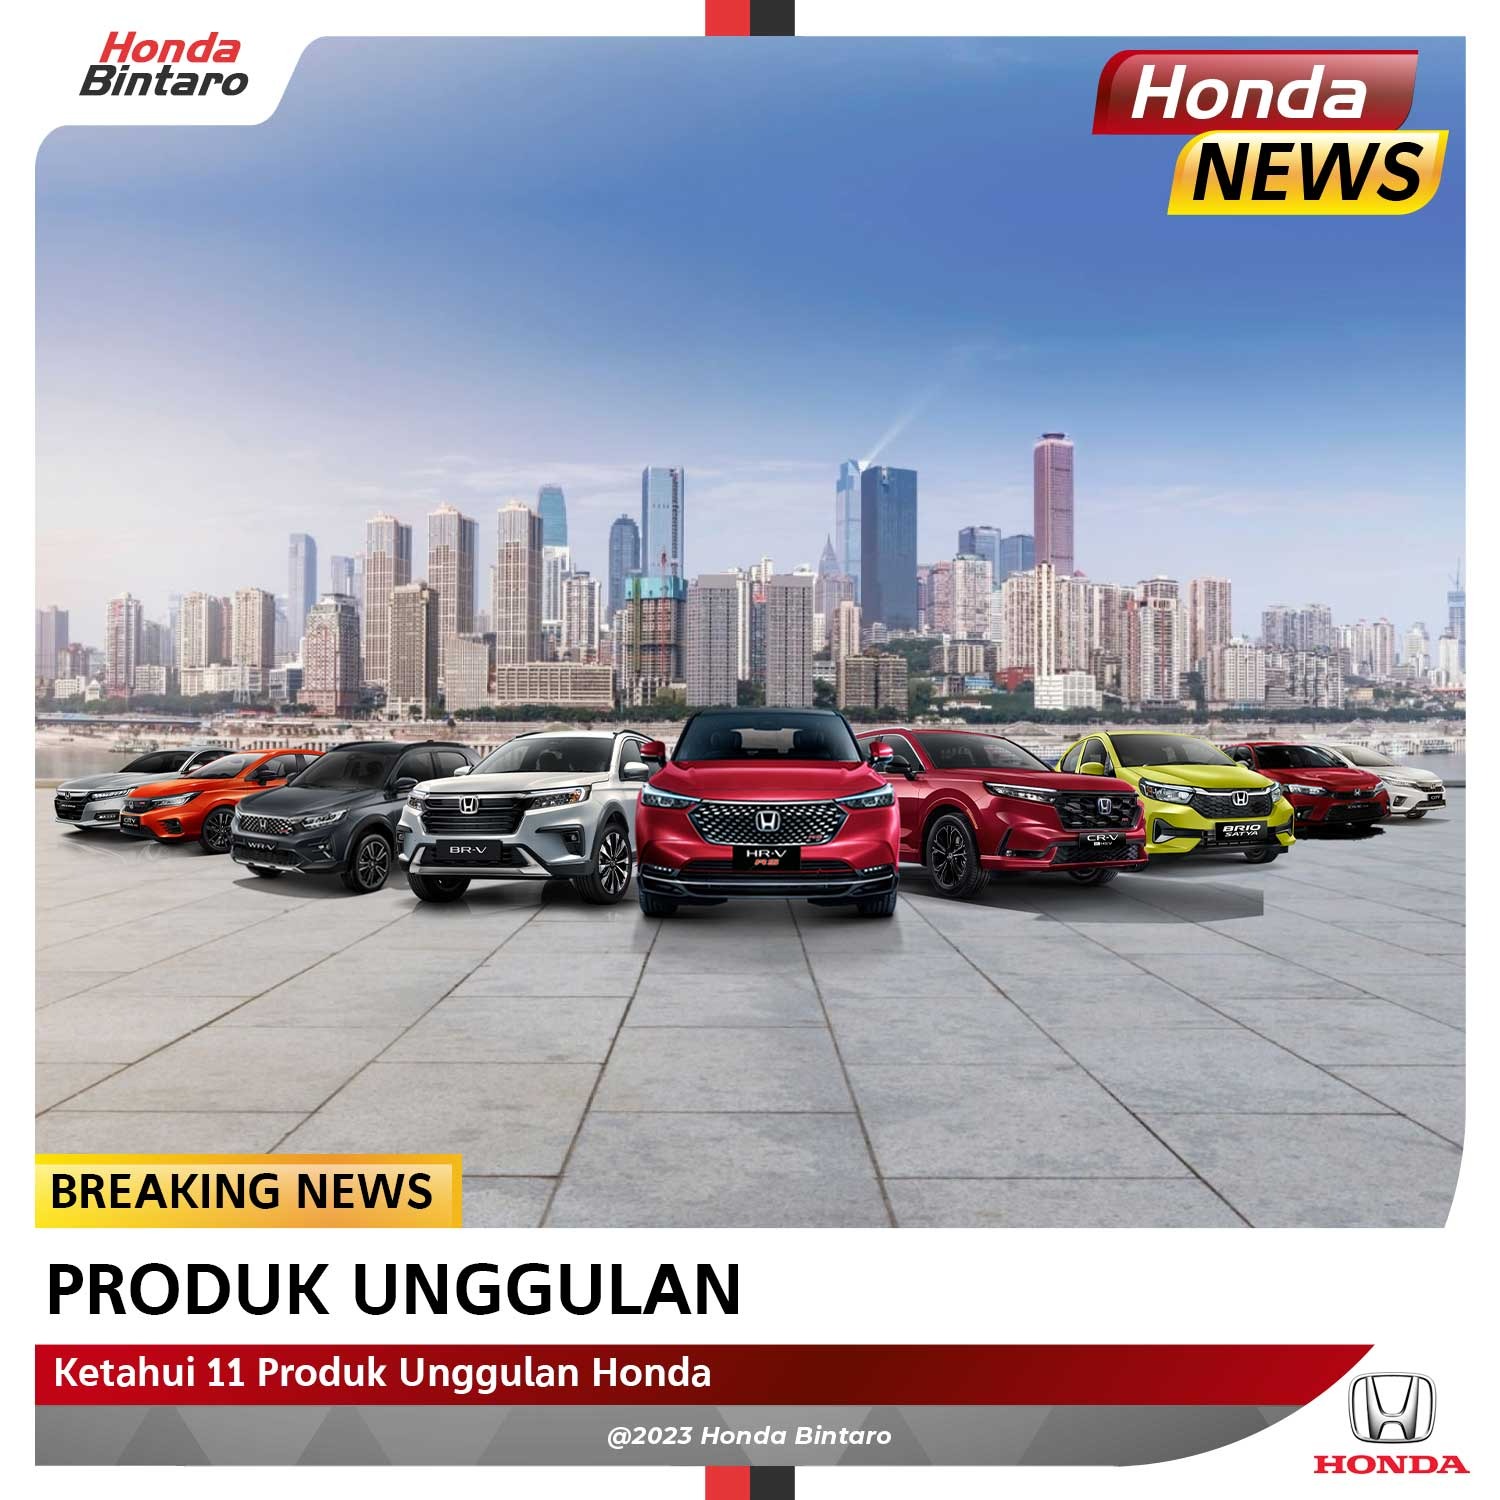 Ketahui 11 Produk Unggulan Honda di Indonesia